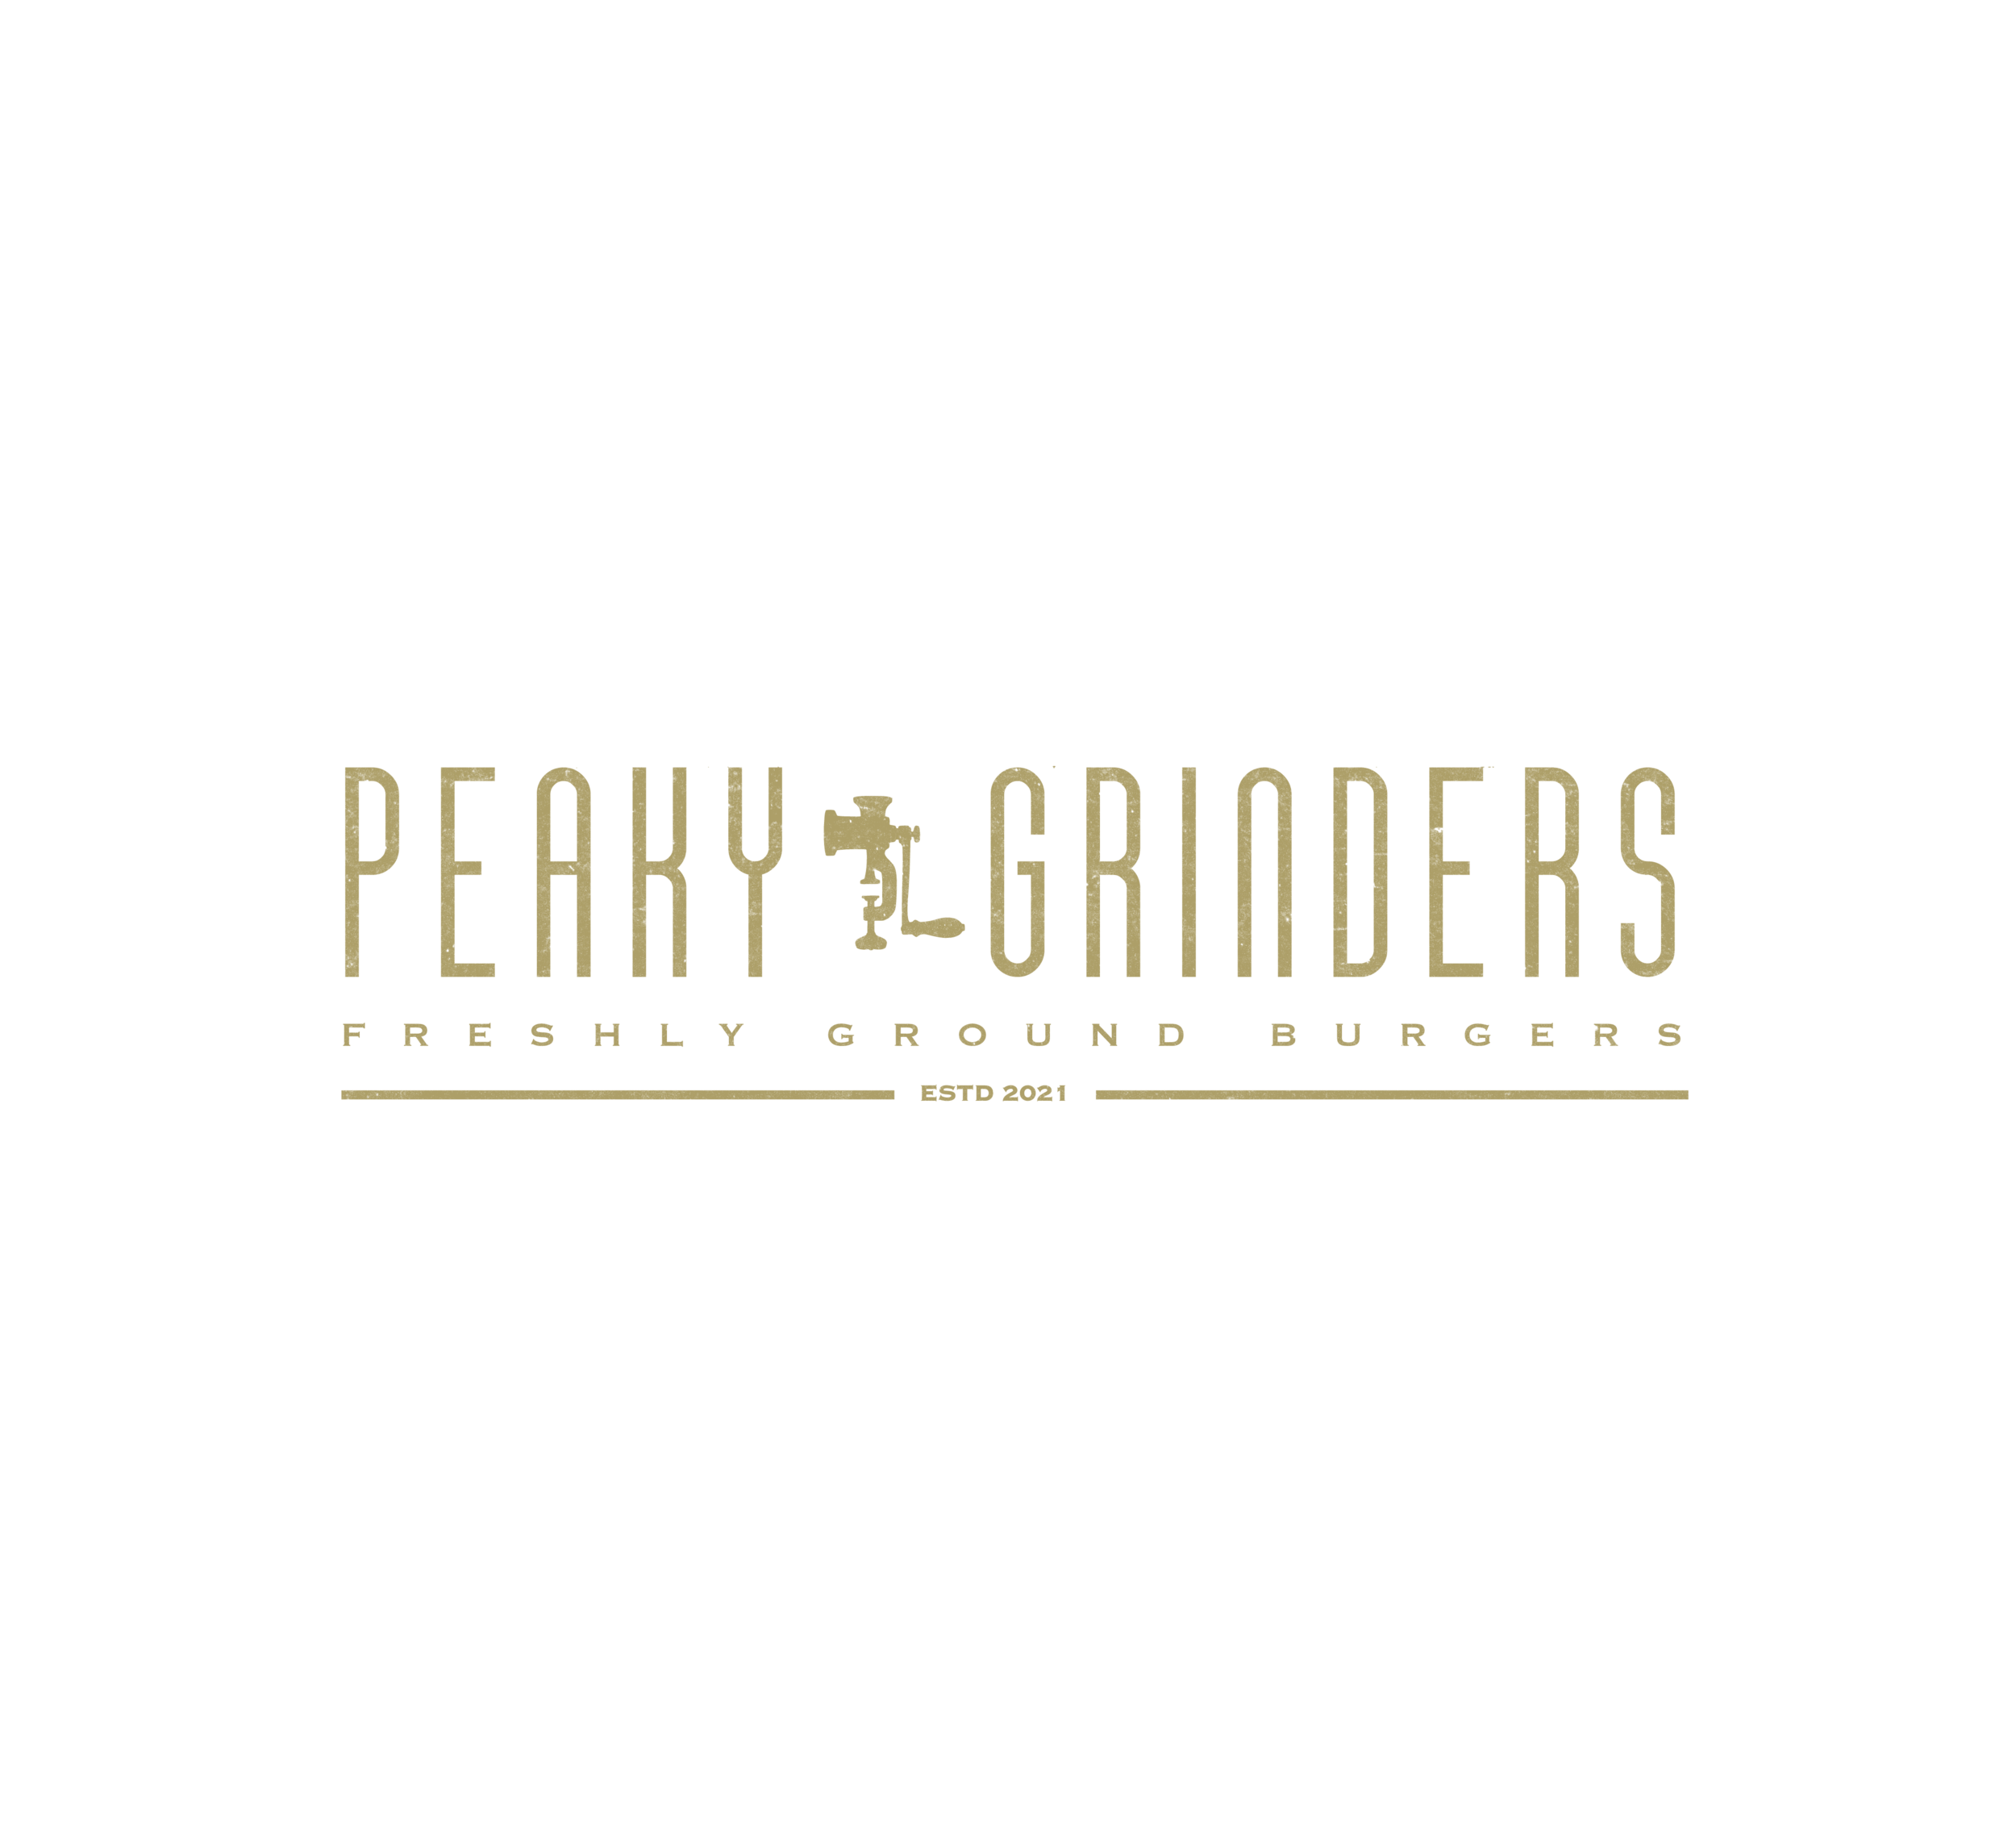 Peaky Grinders